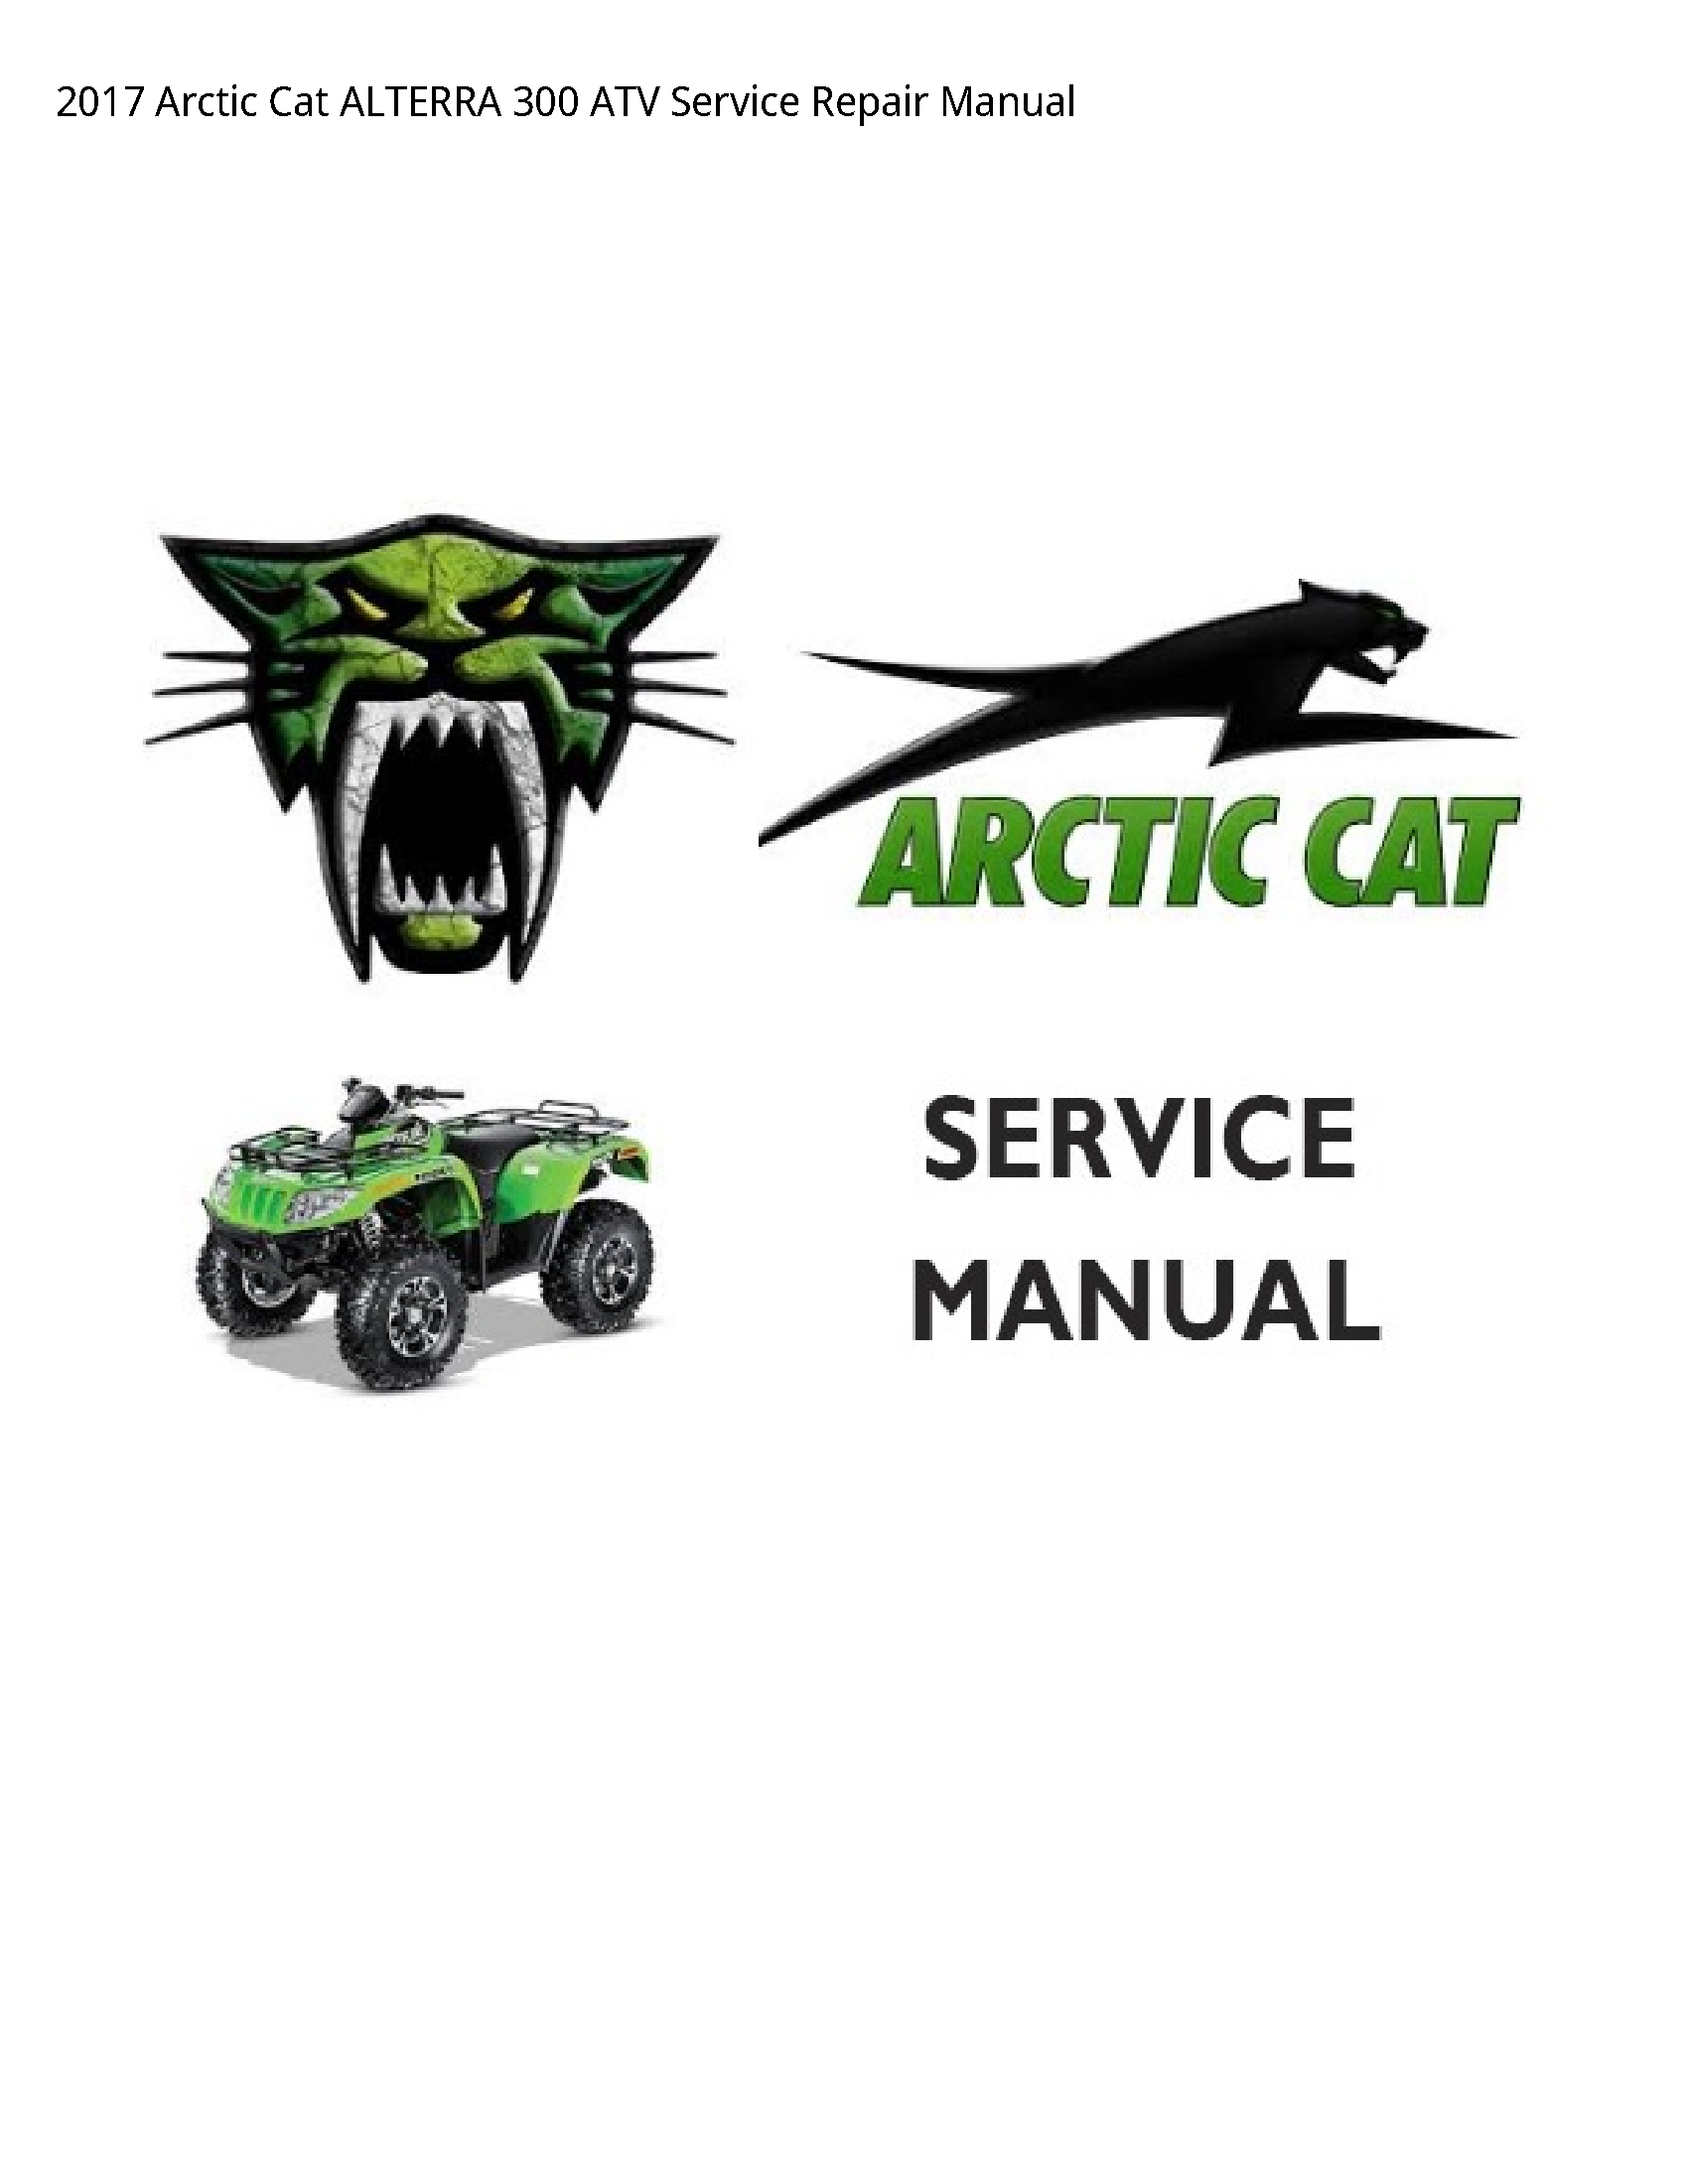 Arctic Cat 300 ALTERRA ATV manual